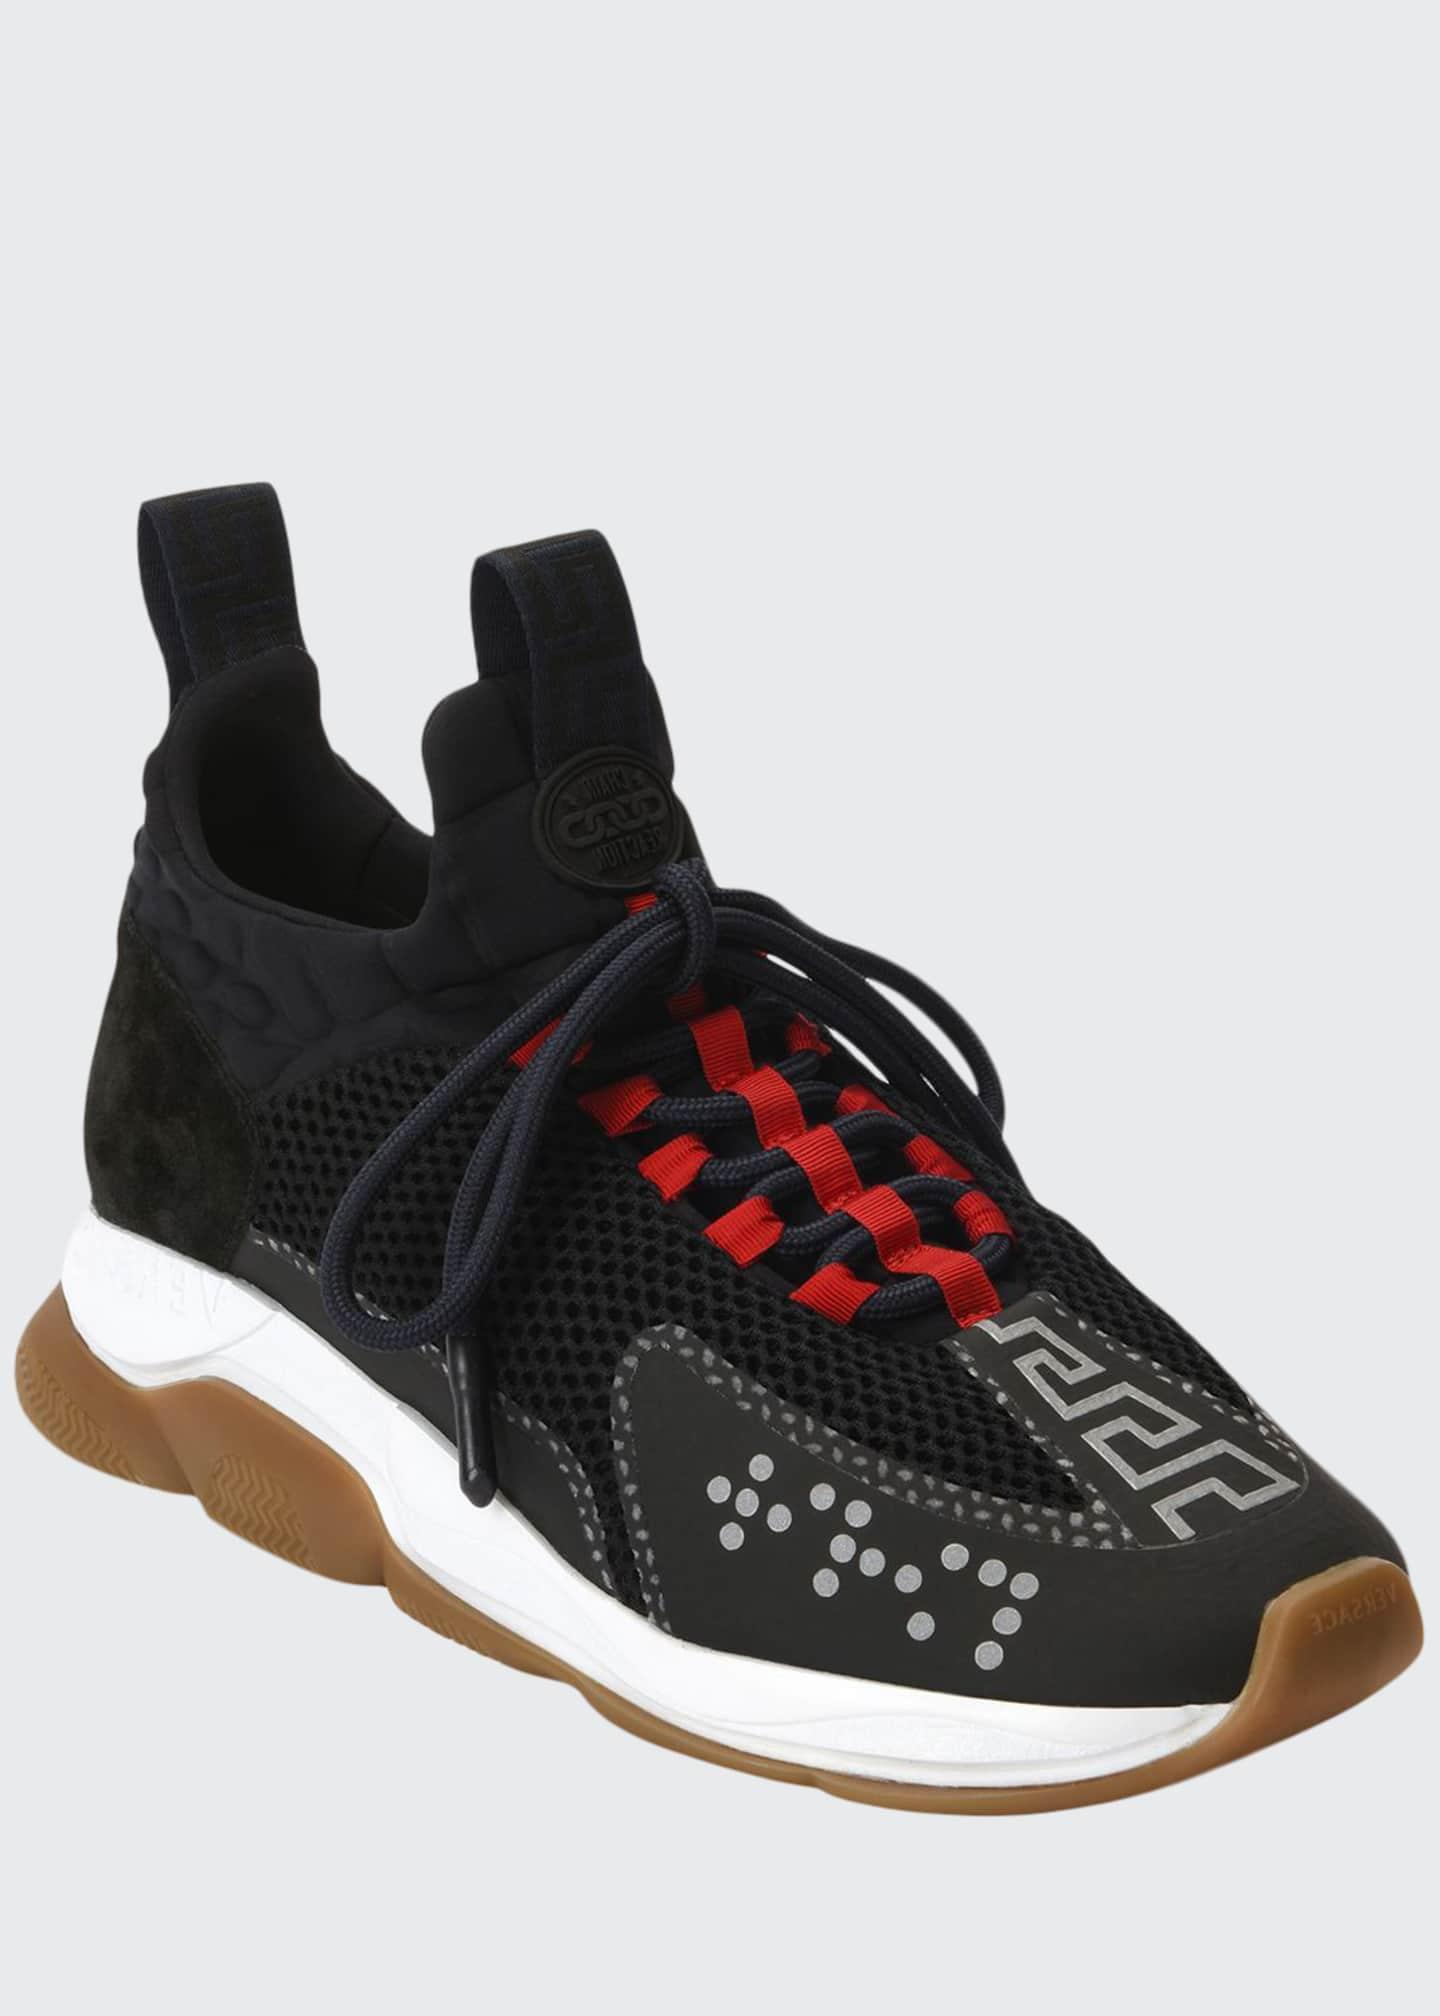 versace neoprene cross trainer sneakers